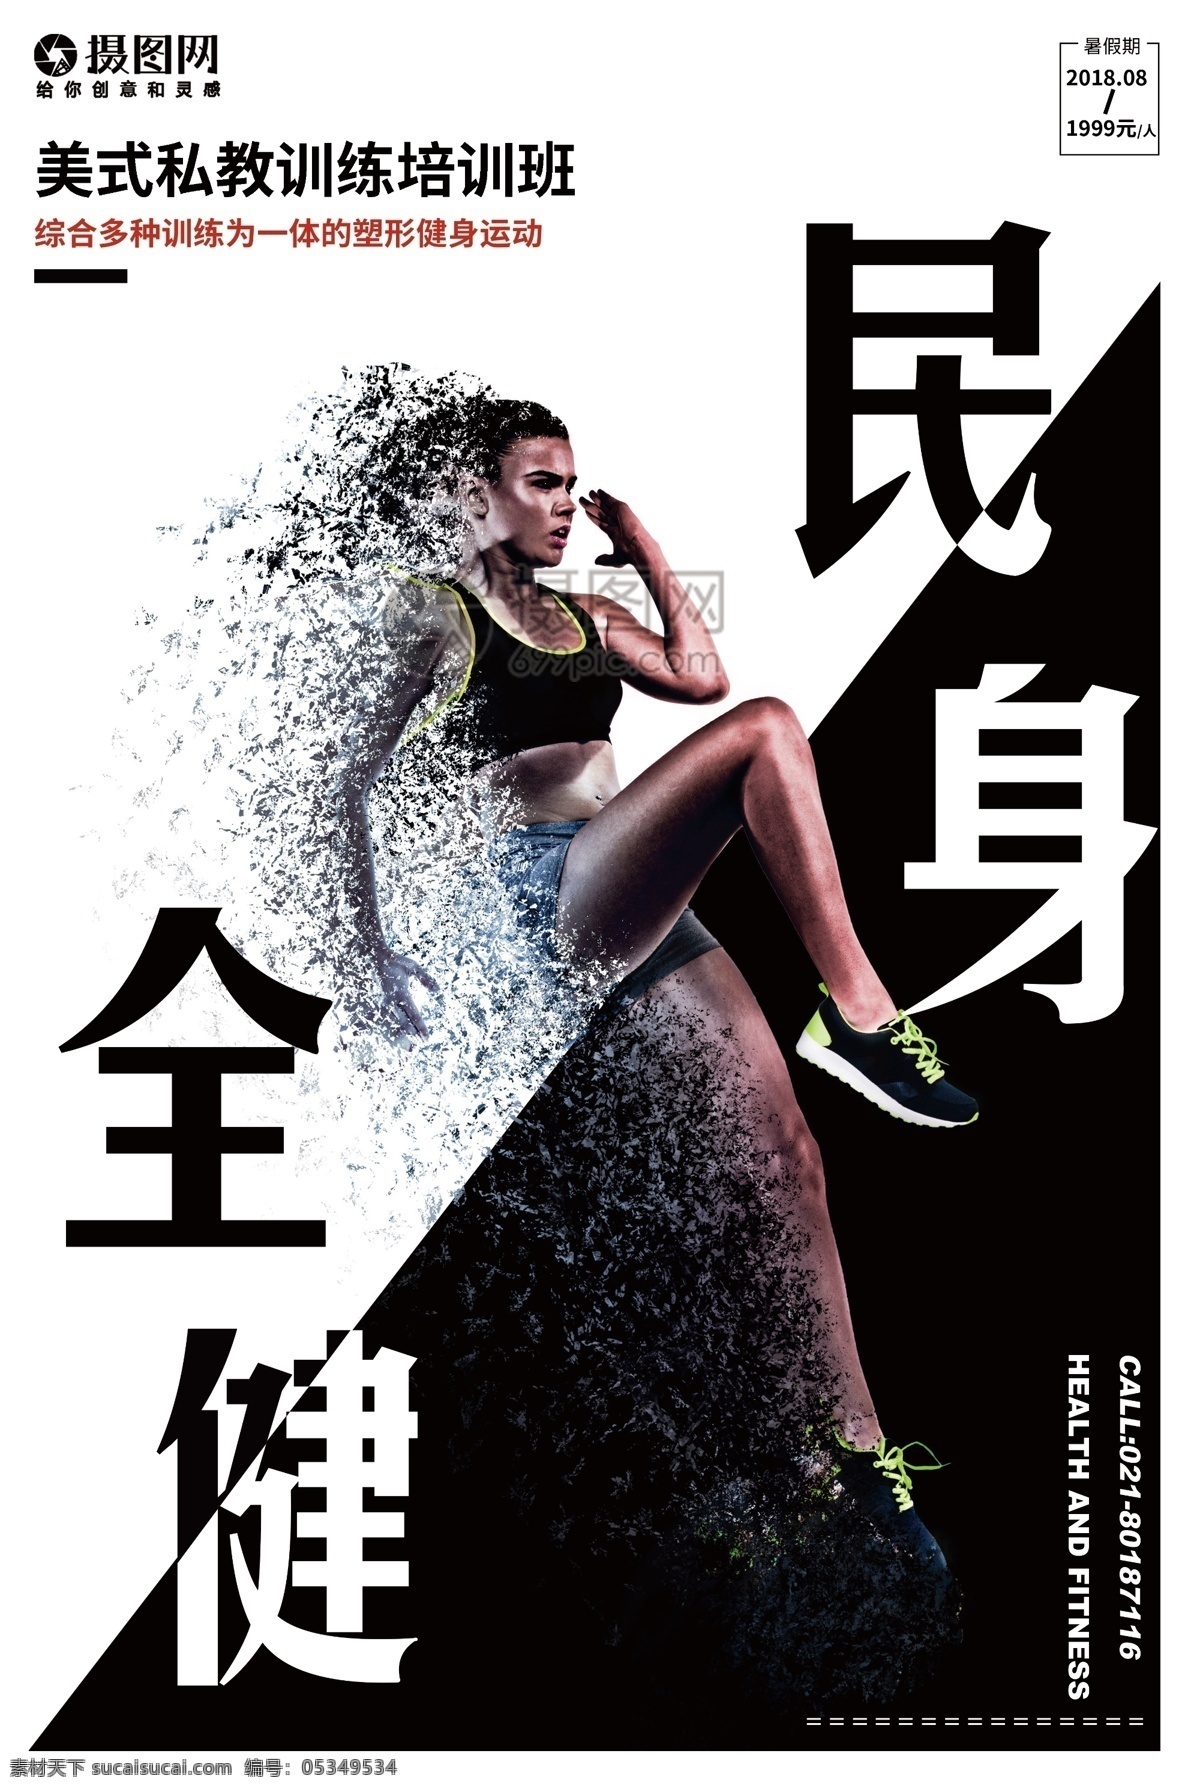 全民健身 宣传海报 健身 健身日 运动不止 运动 肌肉 跑步 黑白 海报